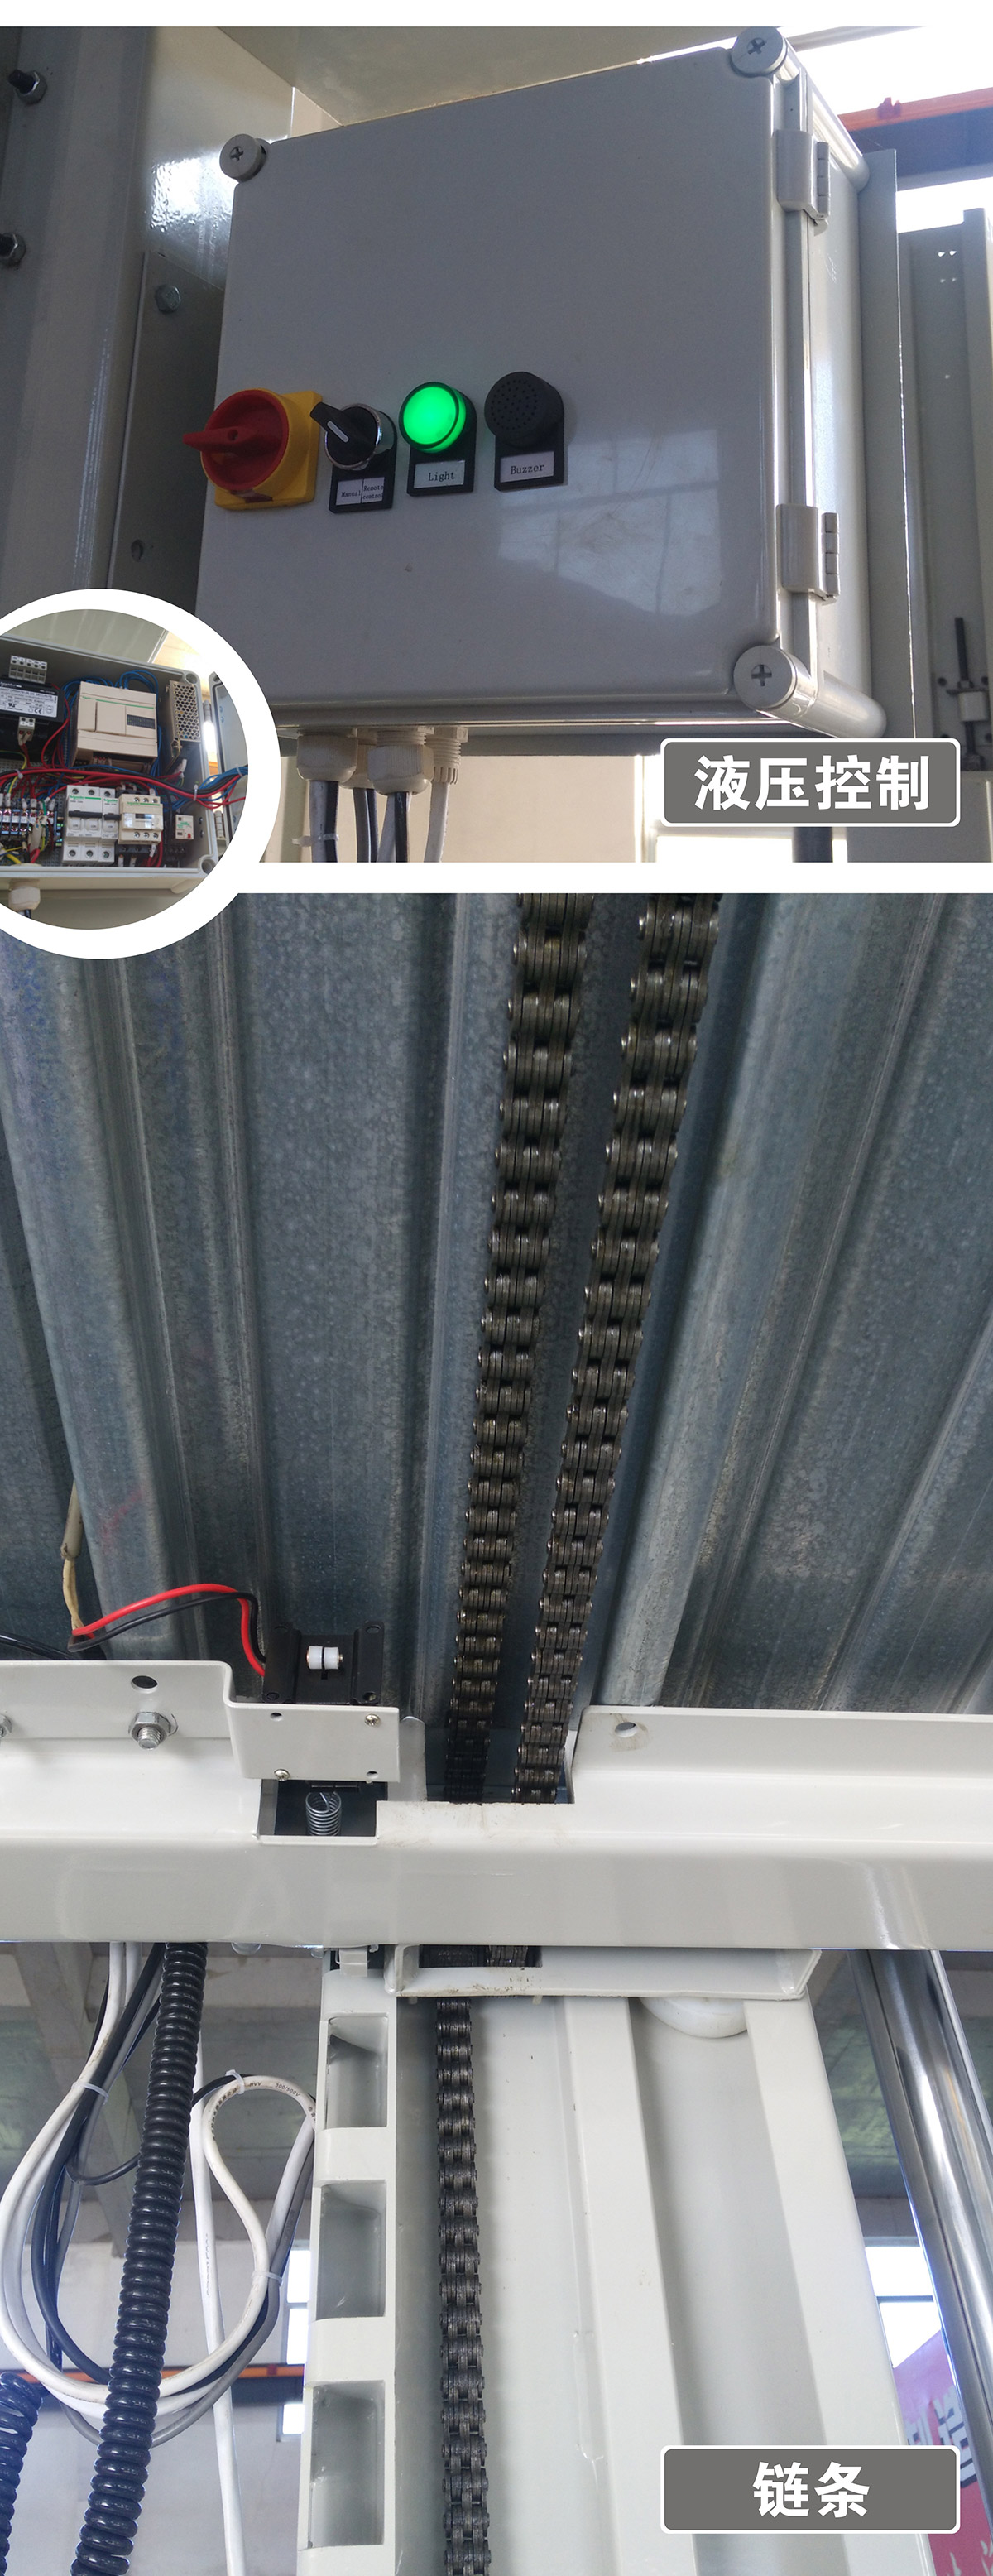 智能停车PJS两柱简易升降立体车库设备液压控制.jpg